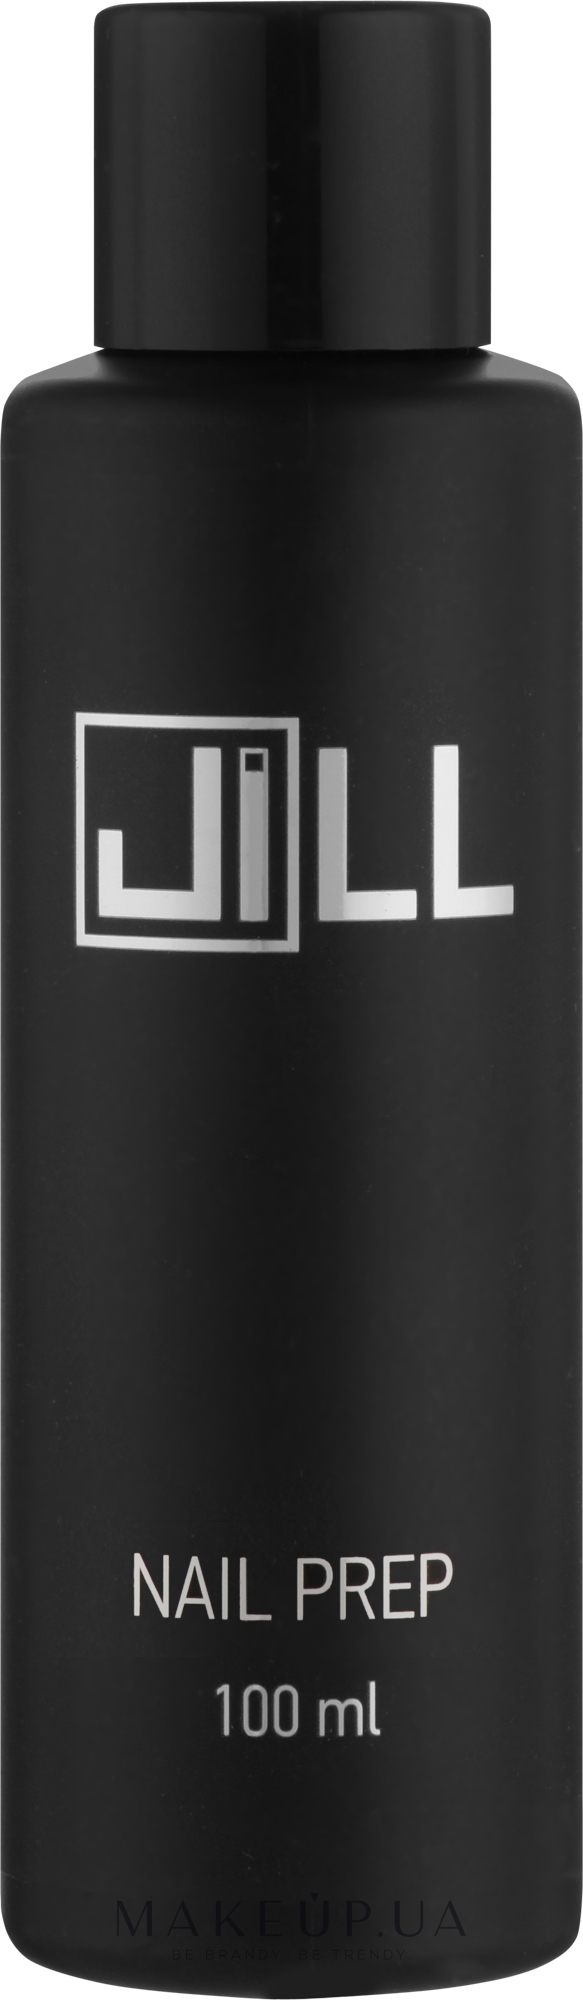 Жидкость для подготовки ногтя - Jill Nail Prep — фото 100ml